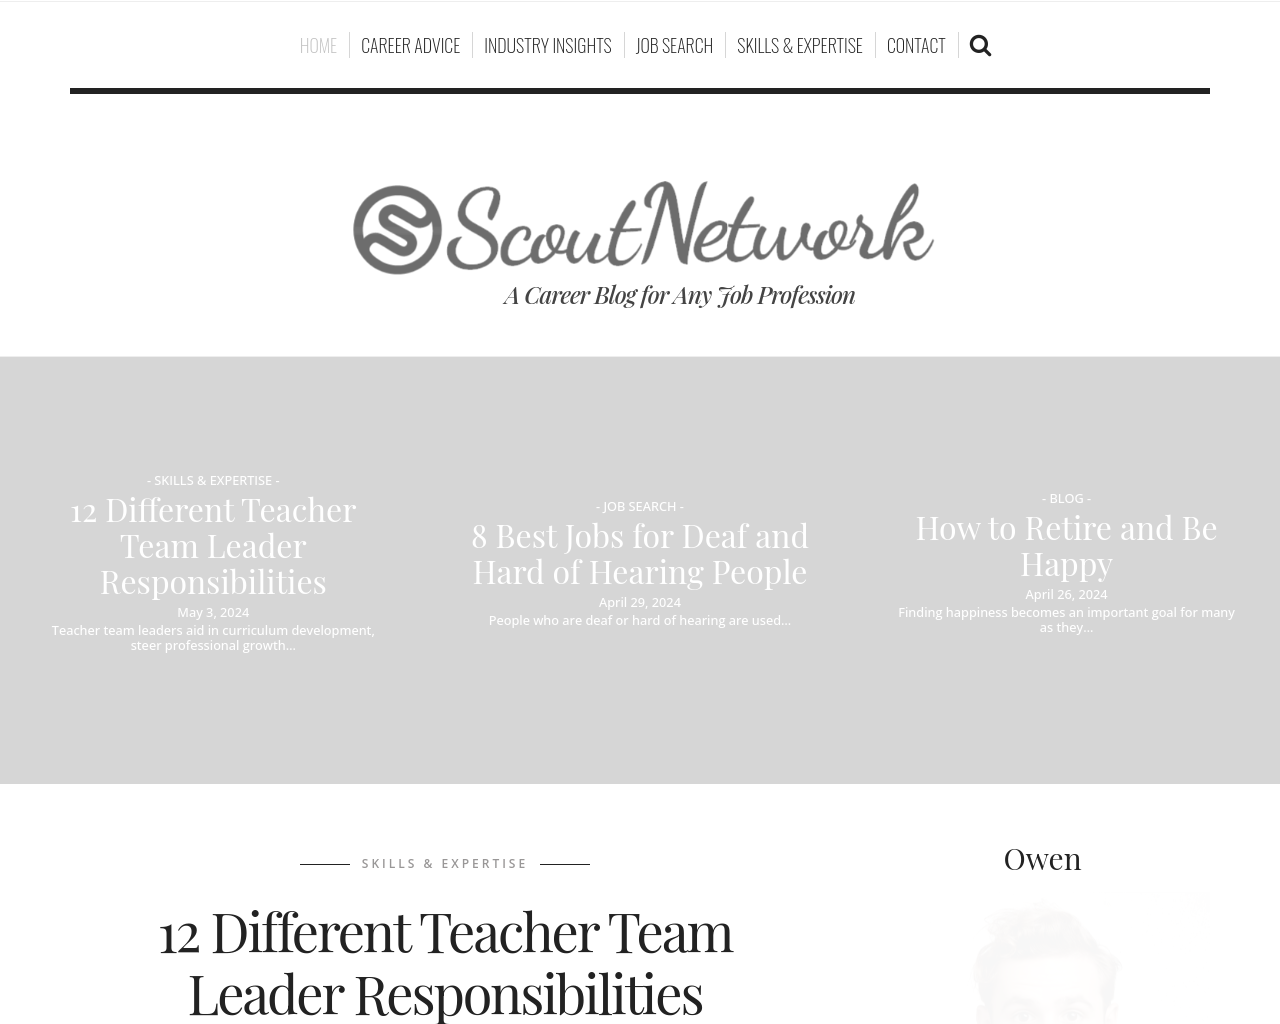 scoutnetworkblog.com